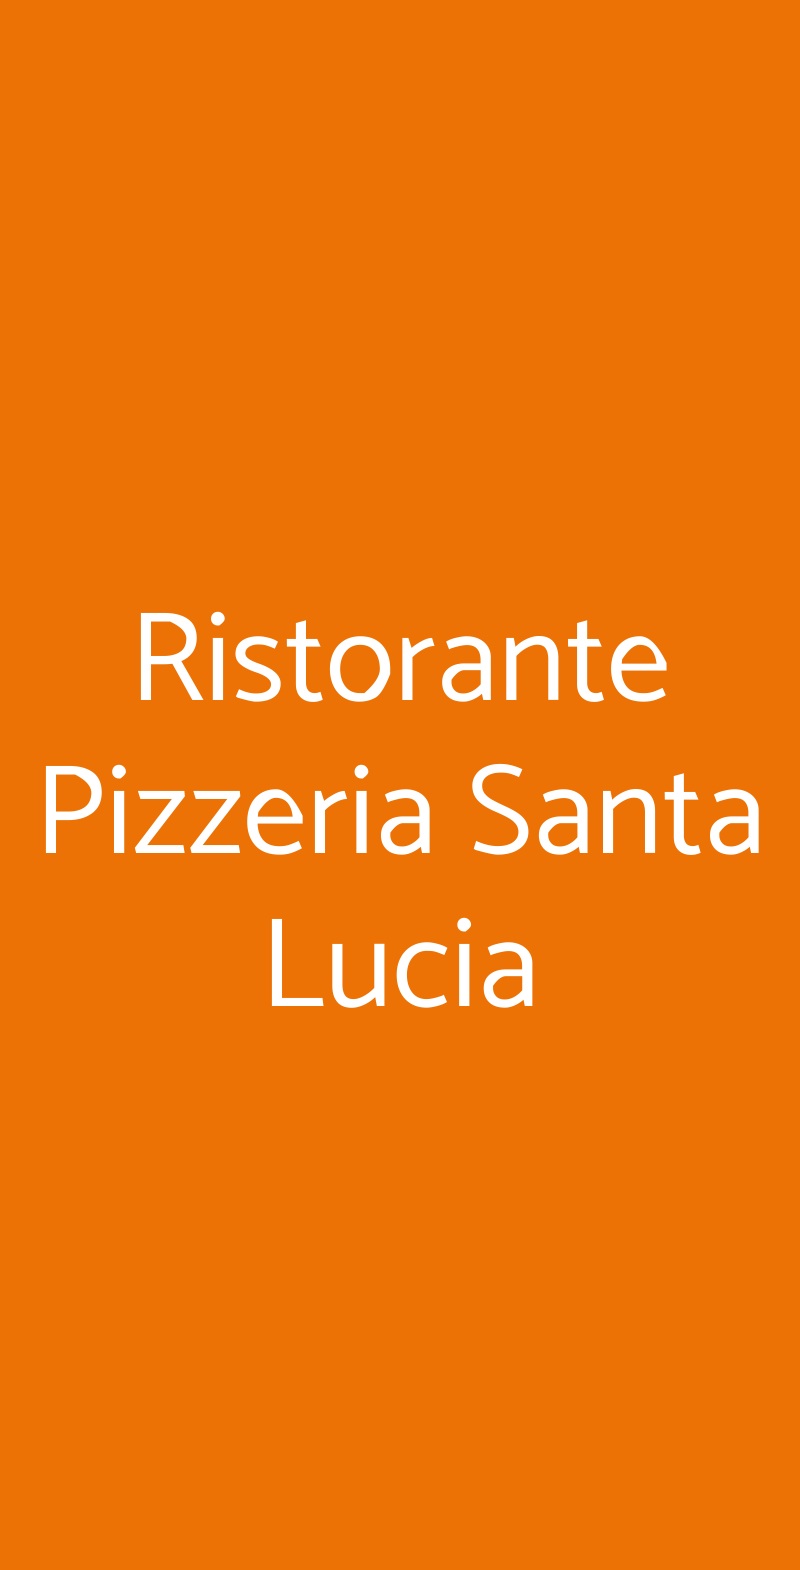 Ristorante Pizzeria Santa Lucia Casalgrande menù 1 pagina